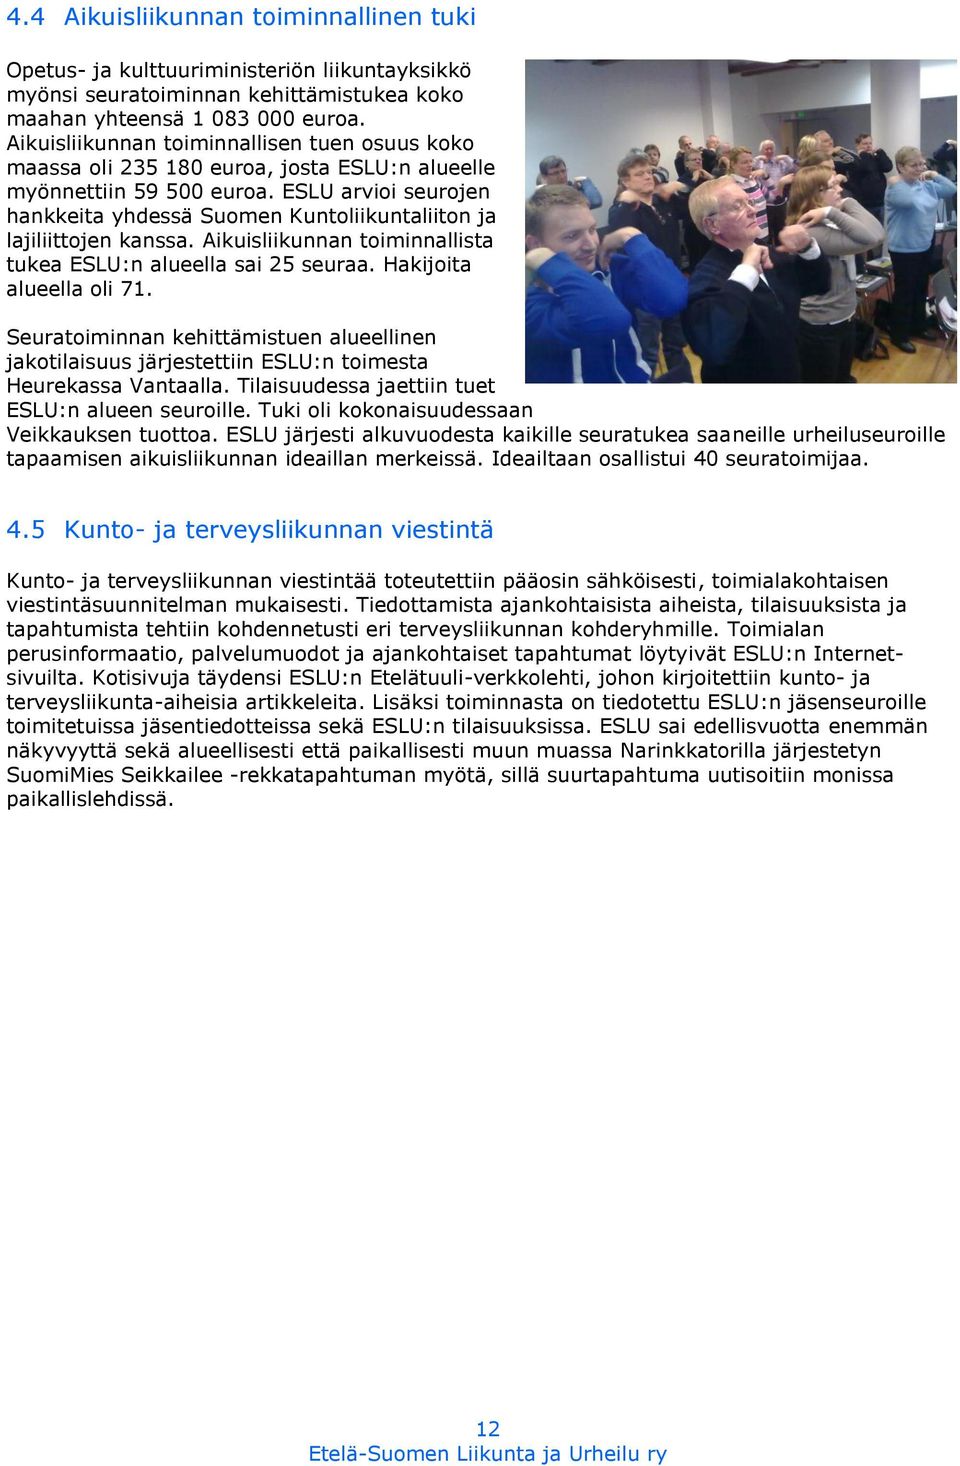 ESLU arvioi seurojen hankkeita yhdessä Suomen Kuntoliikuntaliiton ja lajiliittojen kanssa. Aikuisliikunnan toiminnallista tukea ESLU:n alueella sai 25 seuraa. Hakijoita alueella oli 71.